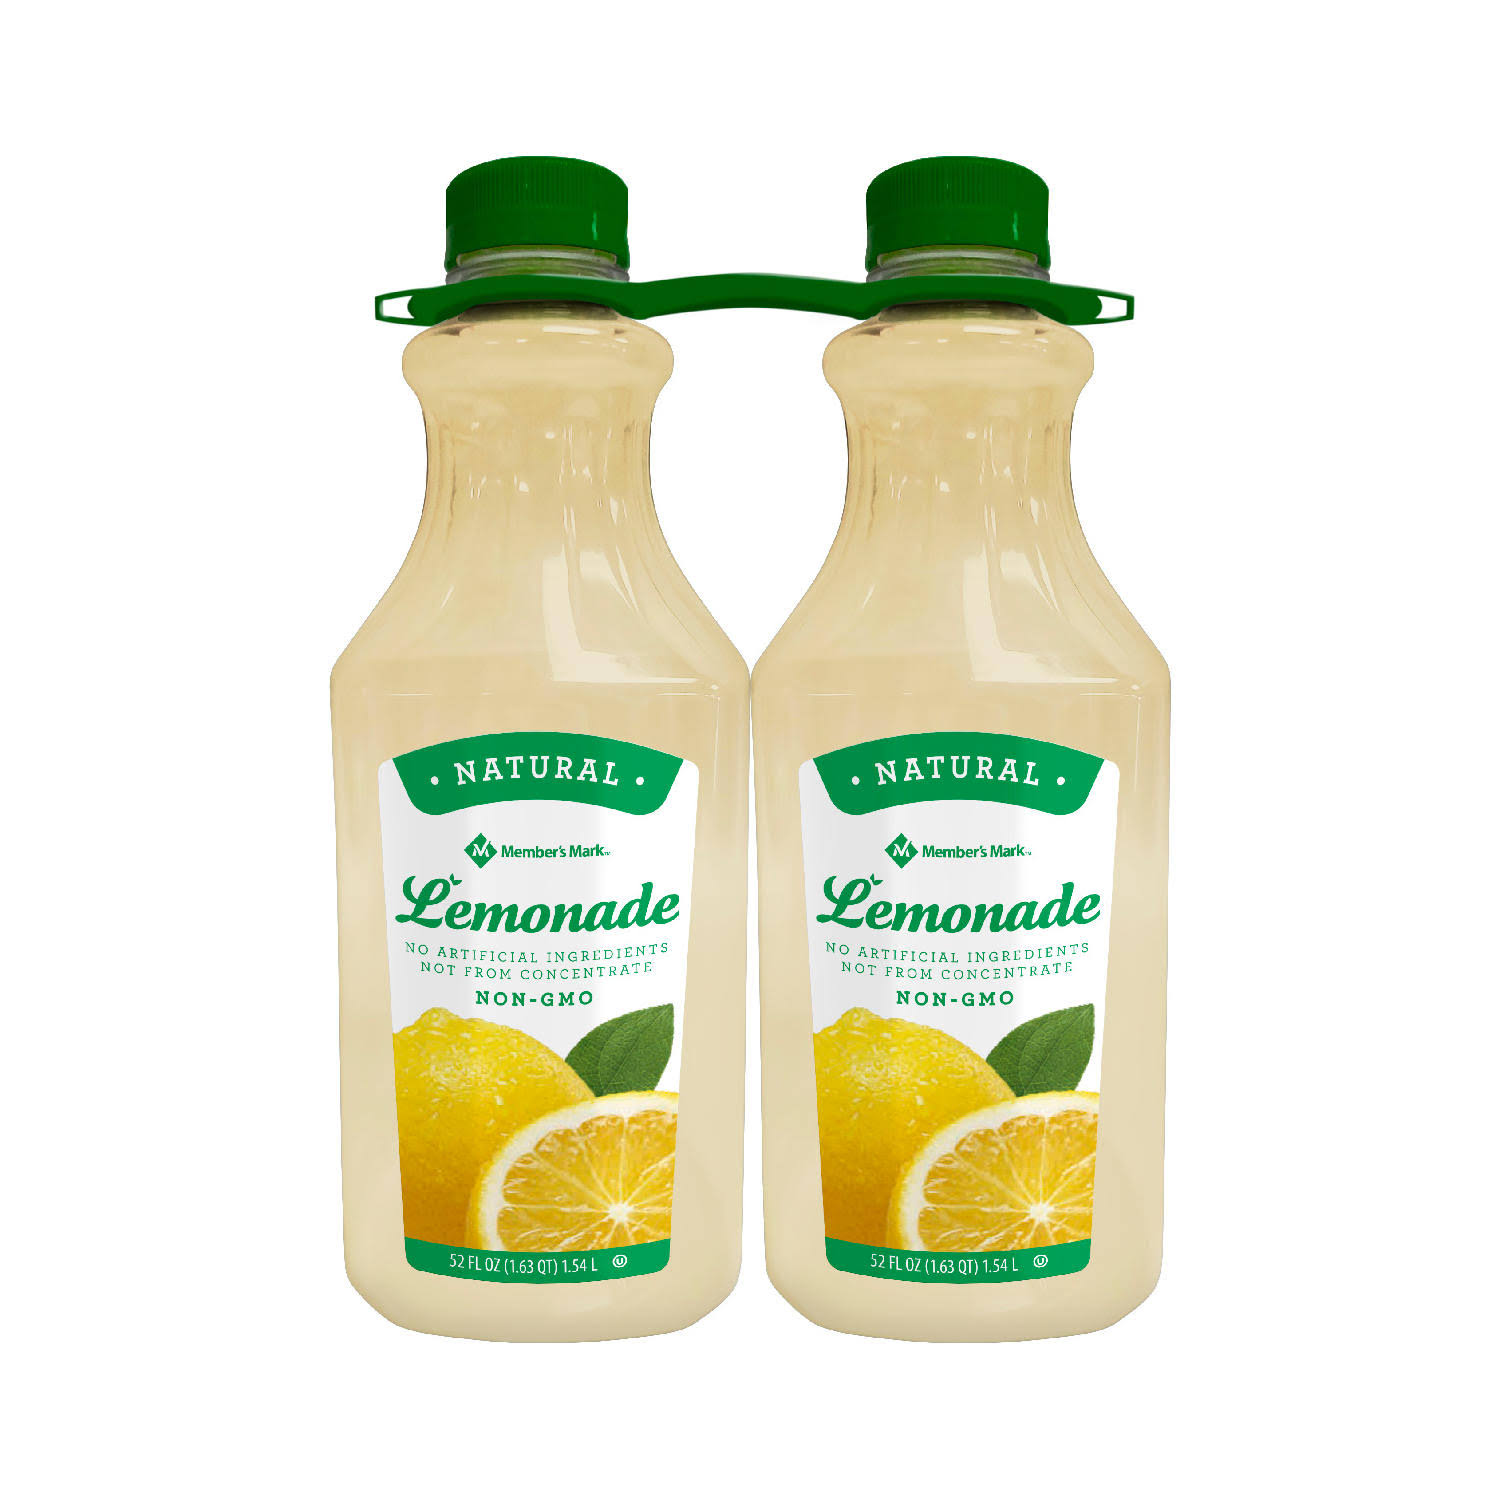 Member's Mark Natural Lemonade - 52 fl oz